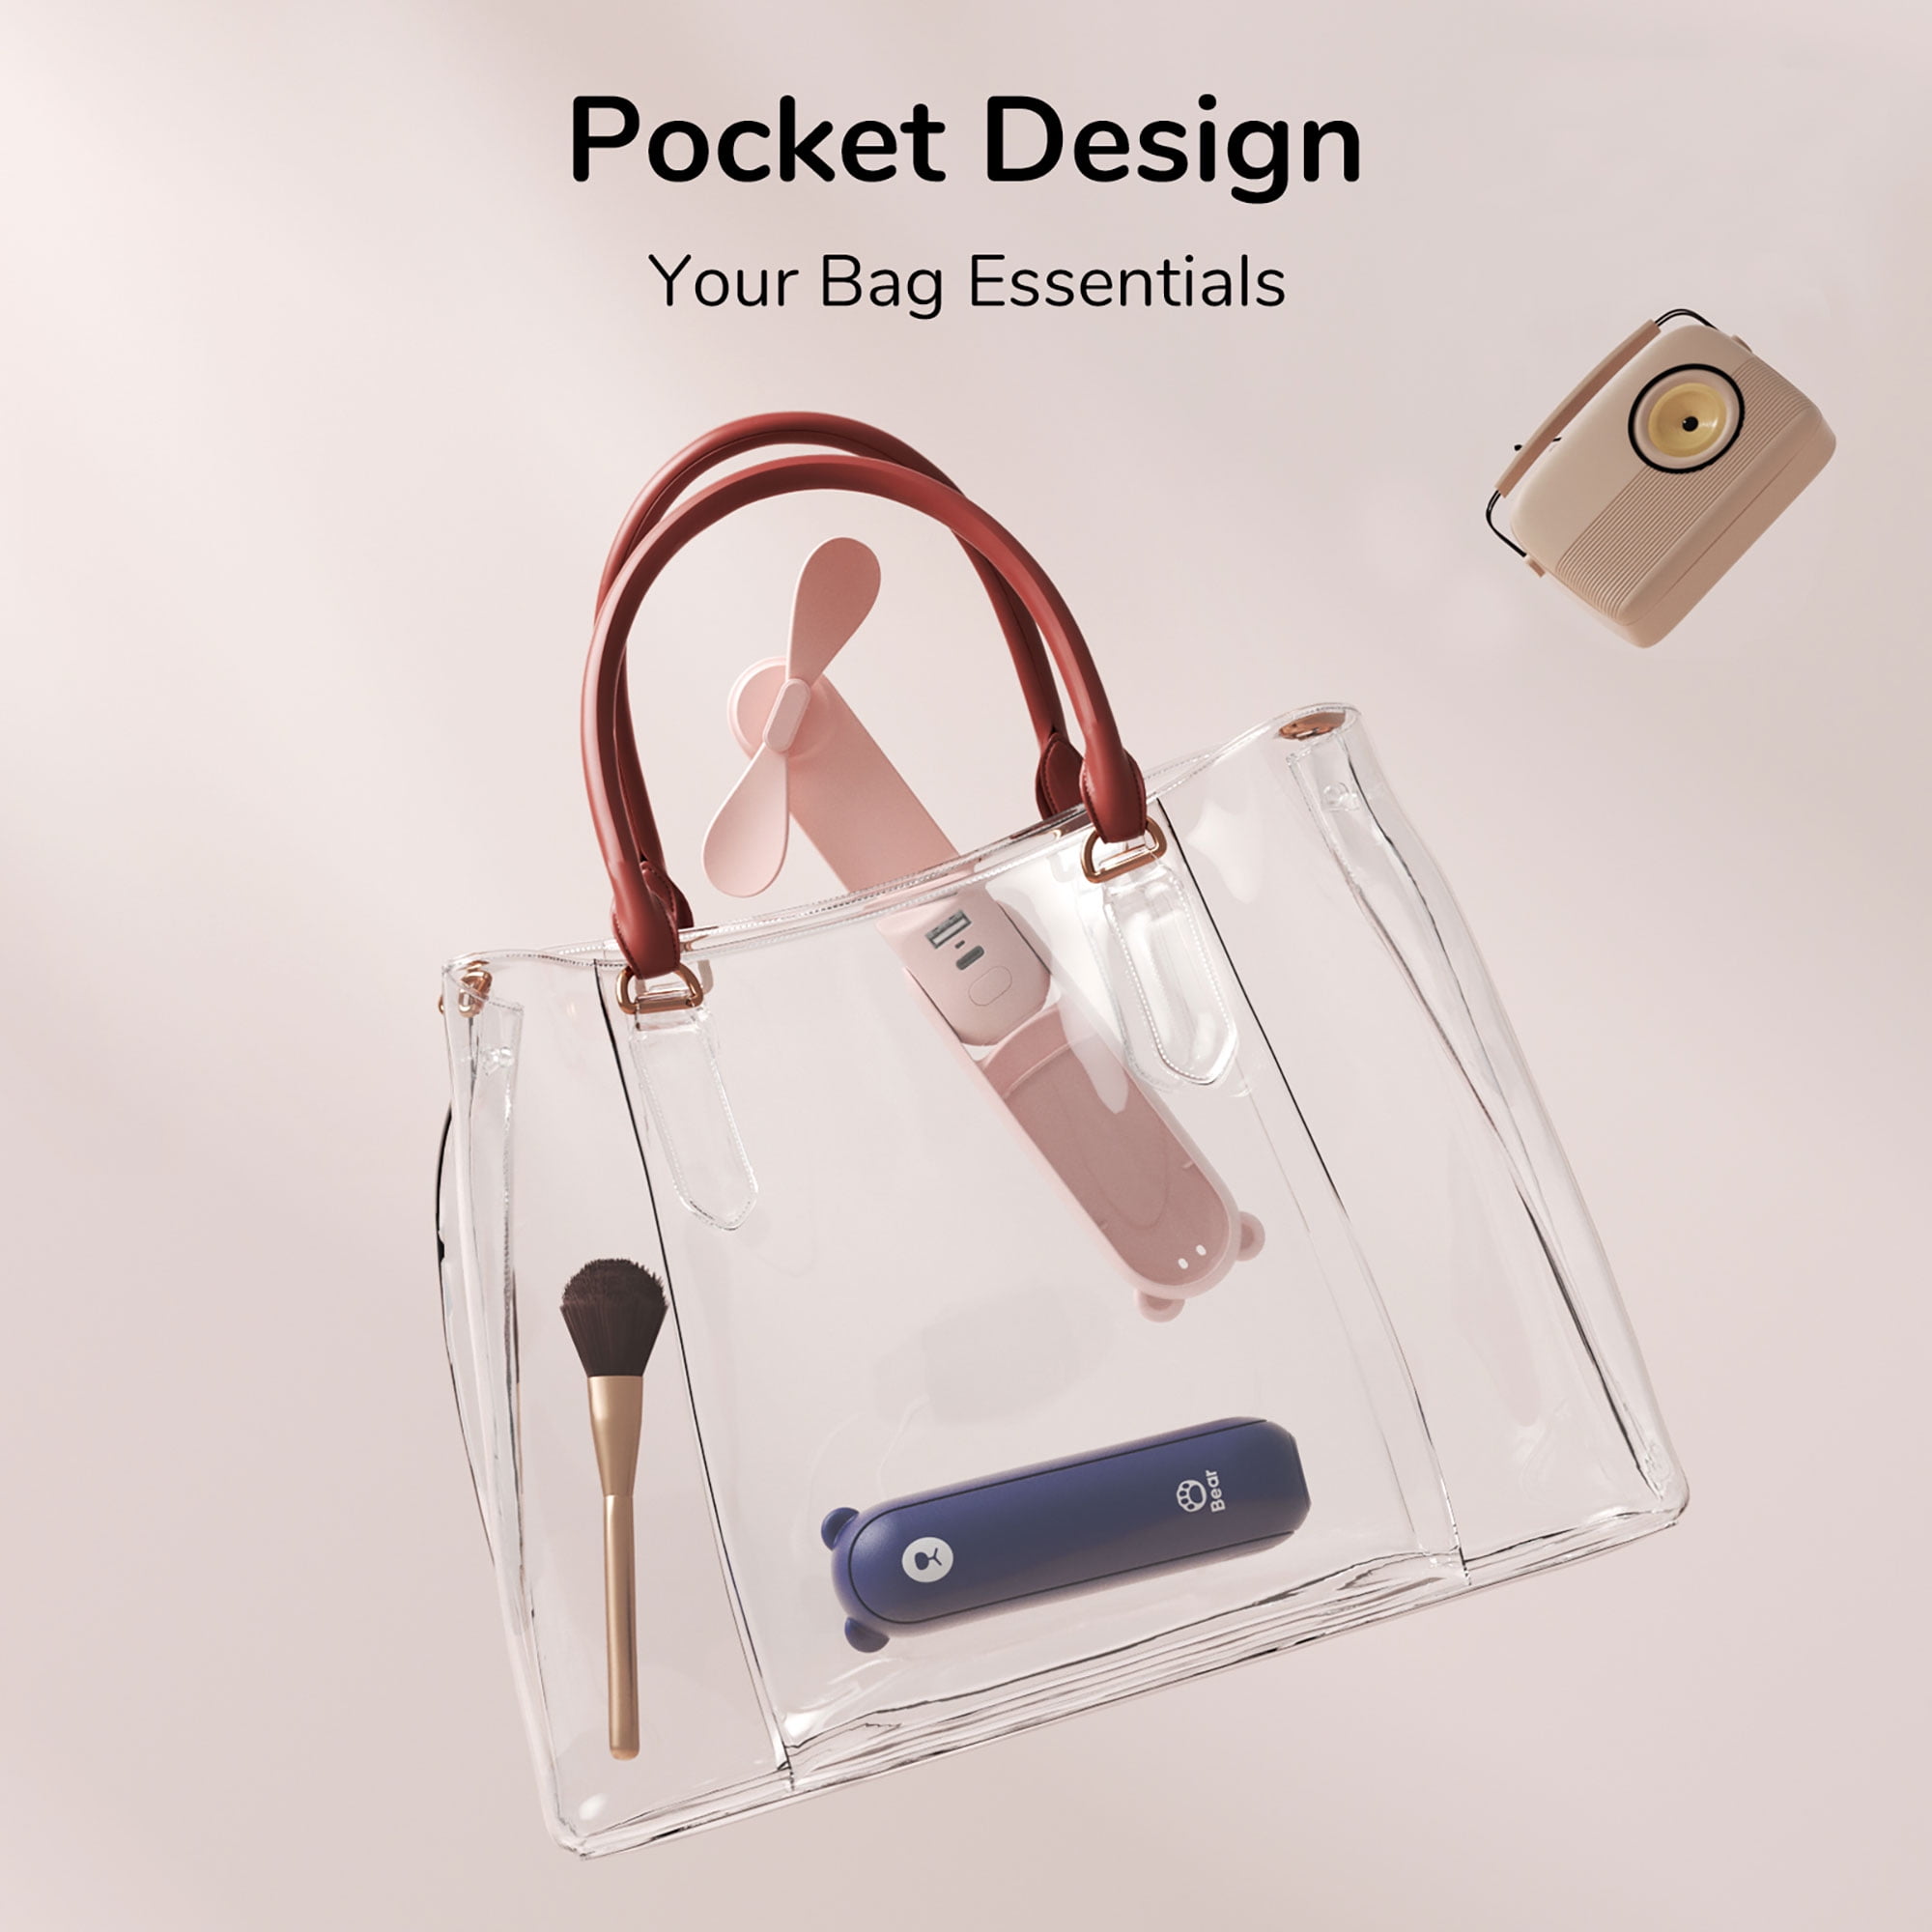 JISULIFE Handheld Mini Fan, Portable USB Rechargeable Small Pocket Fan,  Battery Operated Fan for Women, Travel, Outdoor 